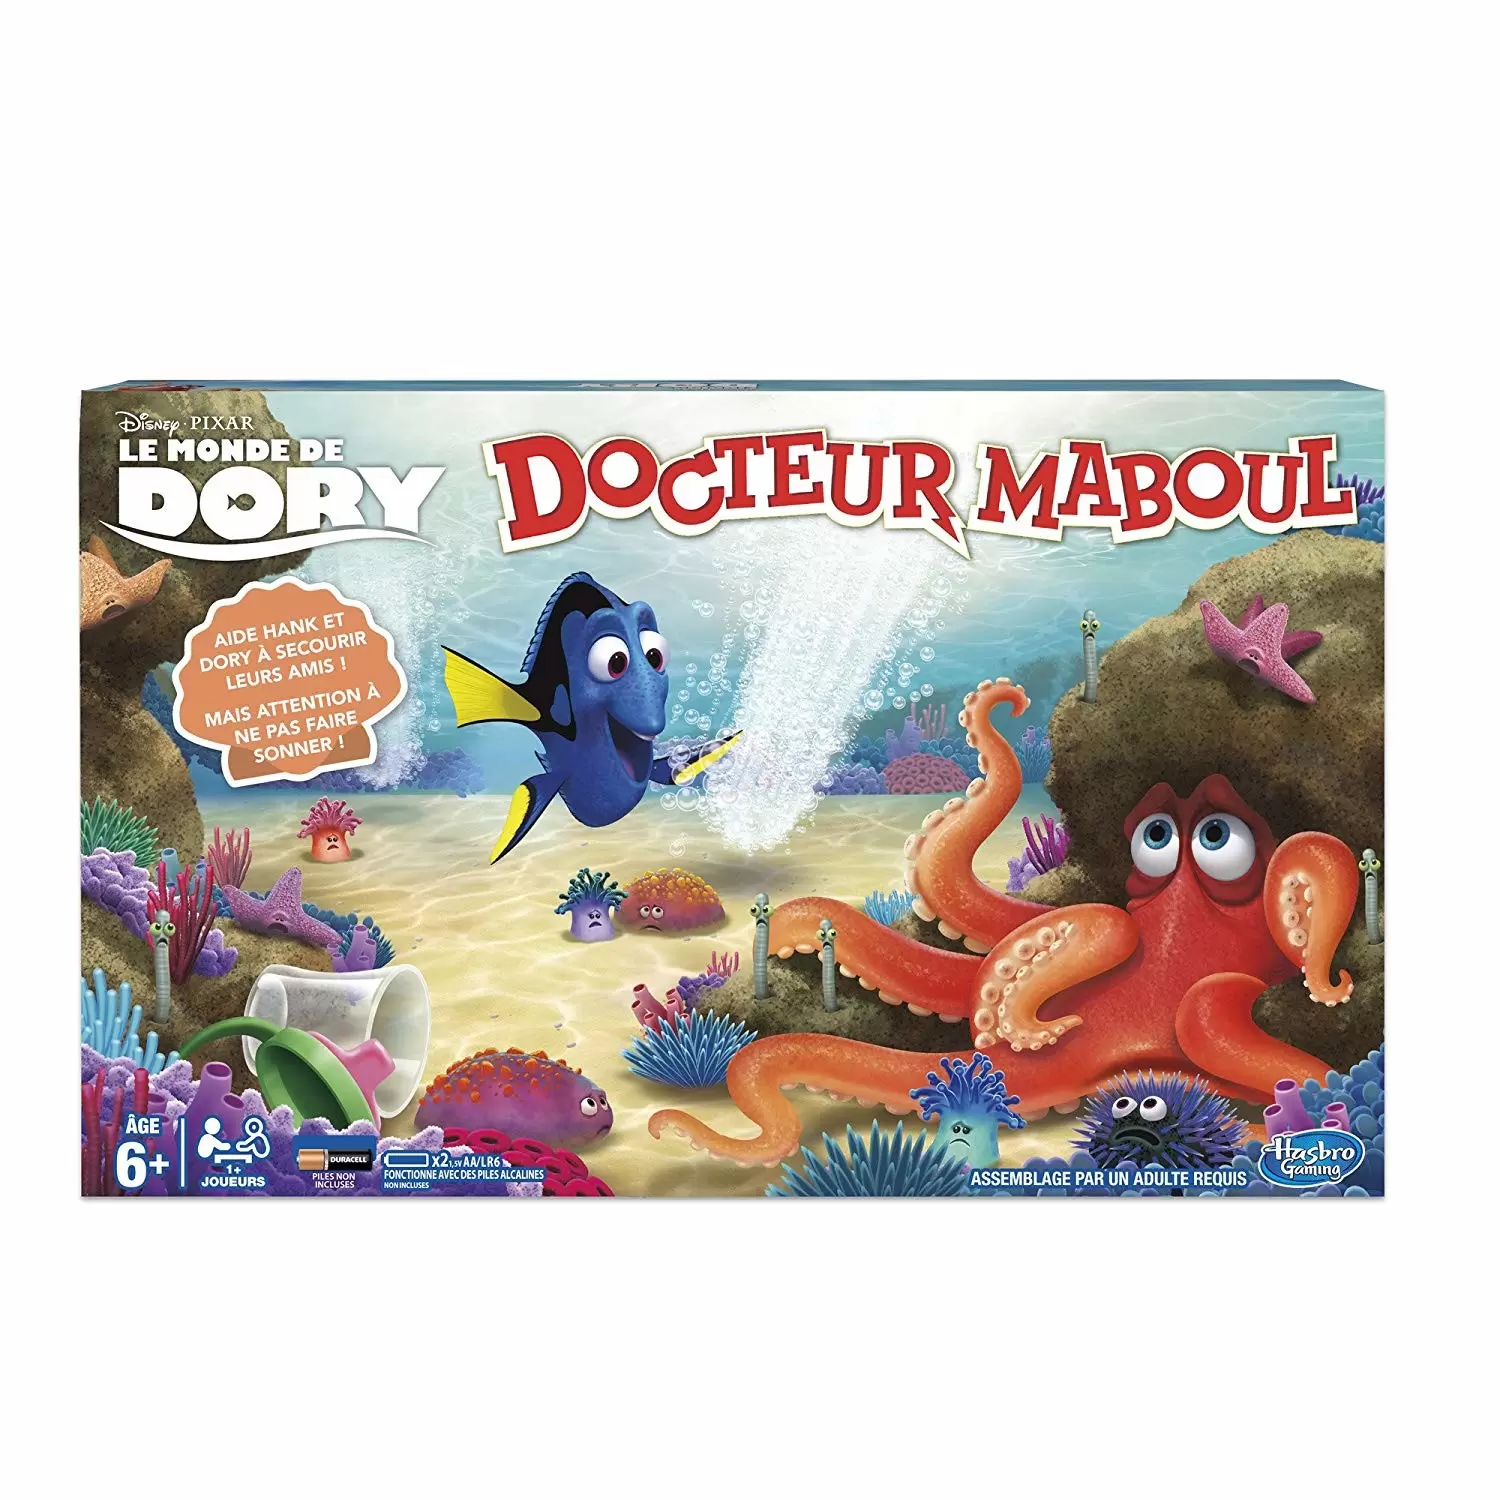 Docteur Maboul - Dory - docteur maboul